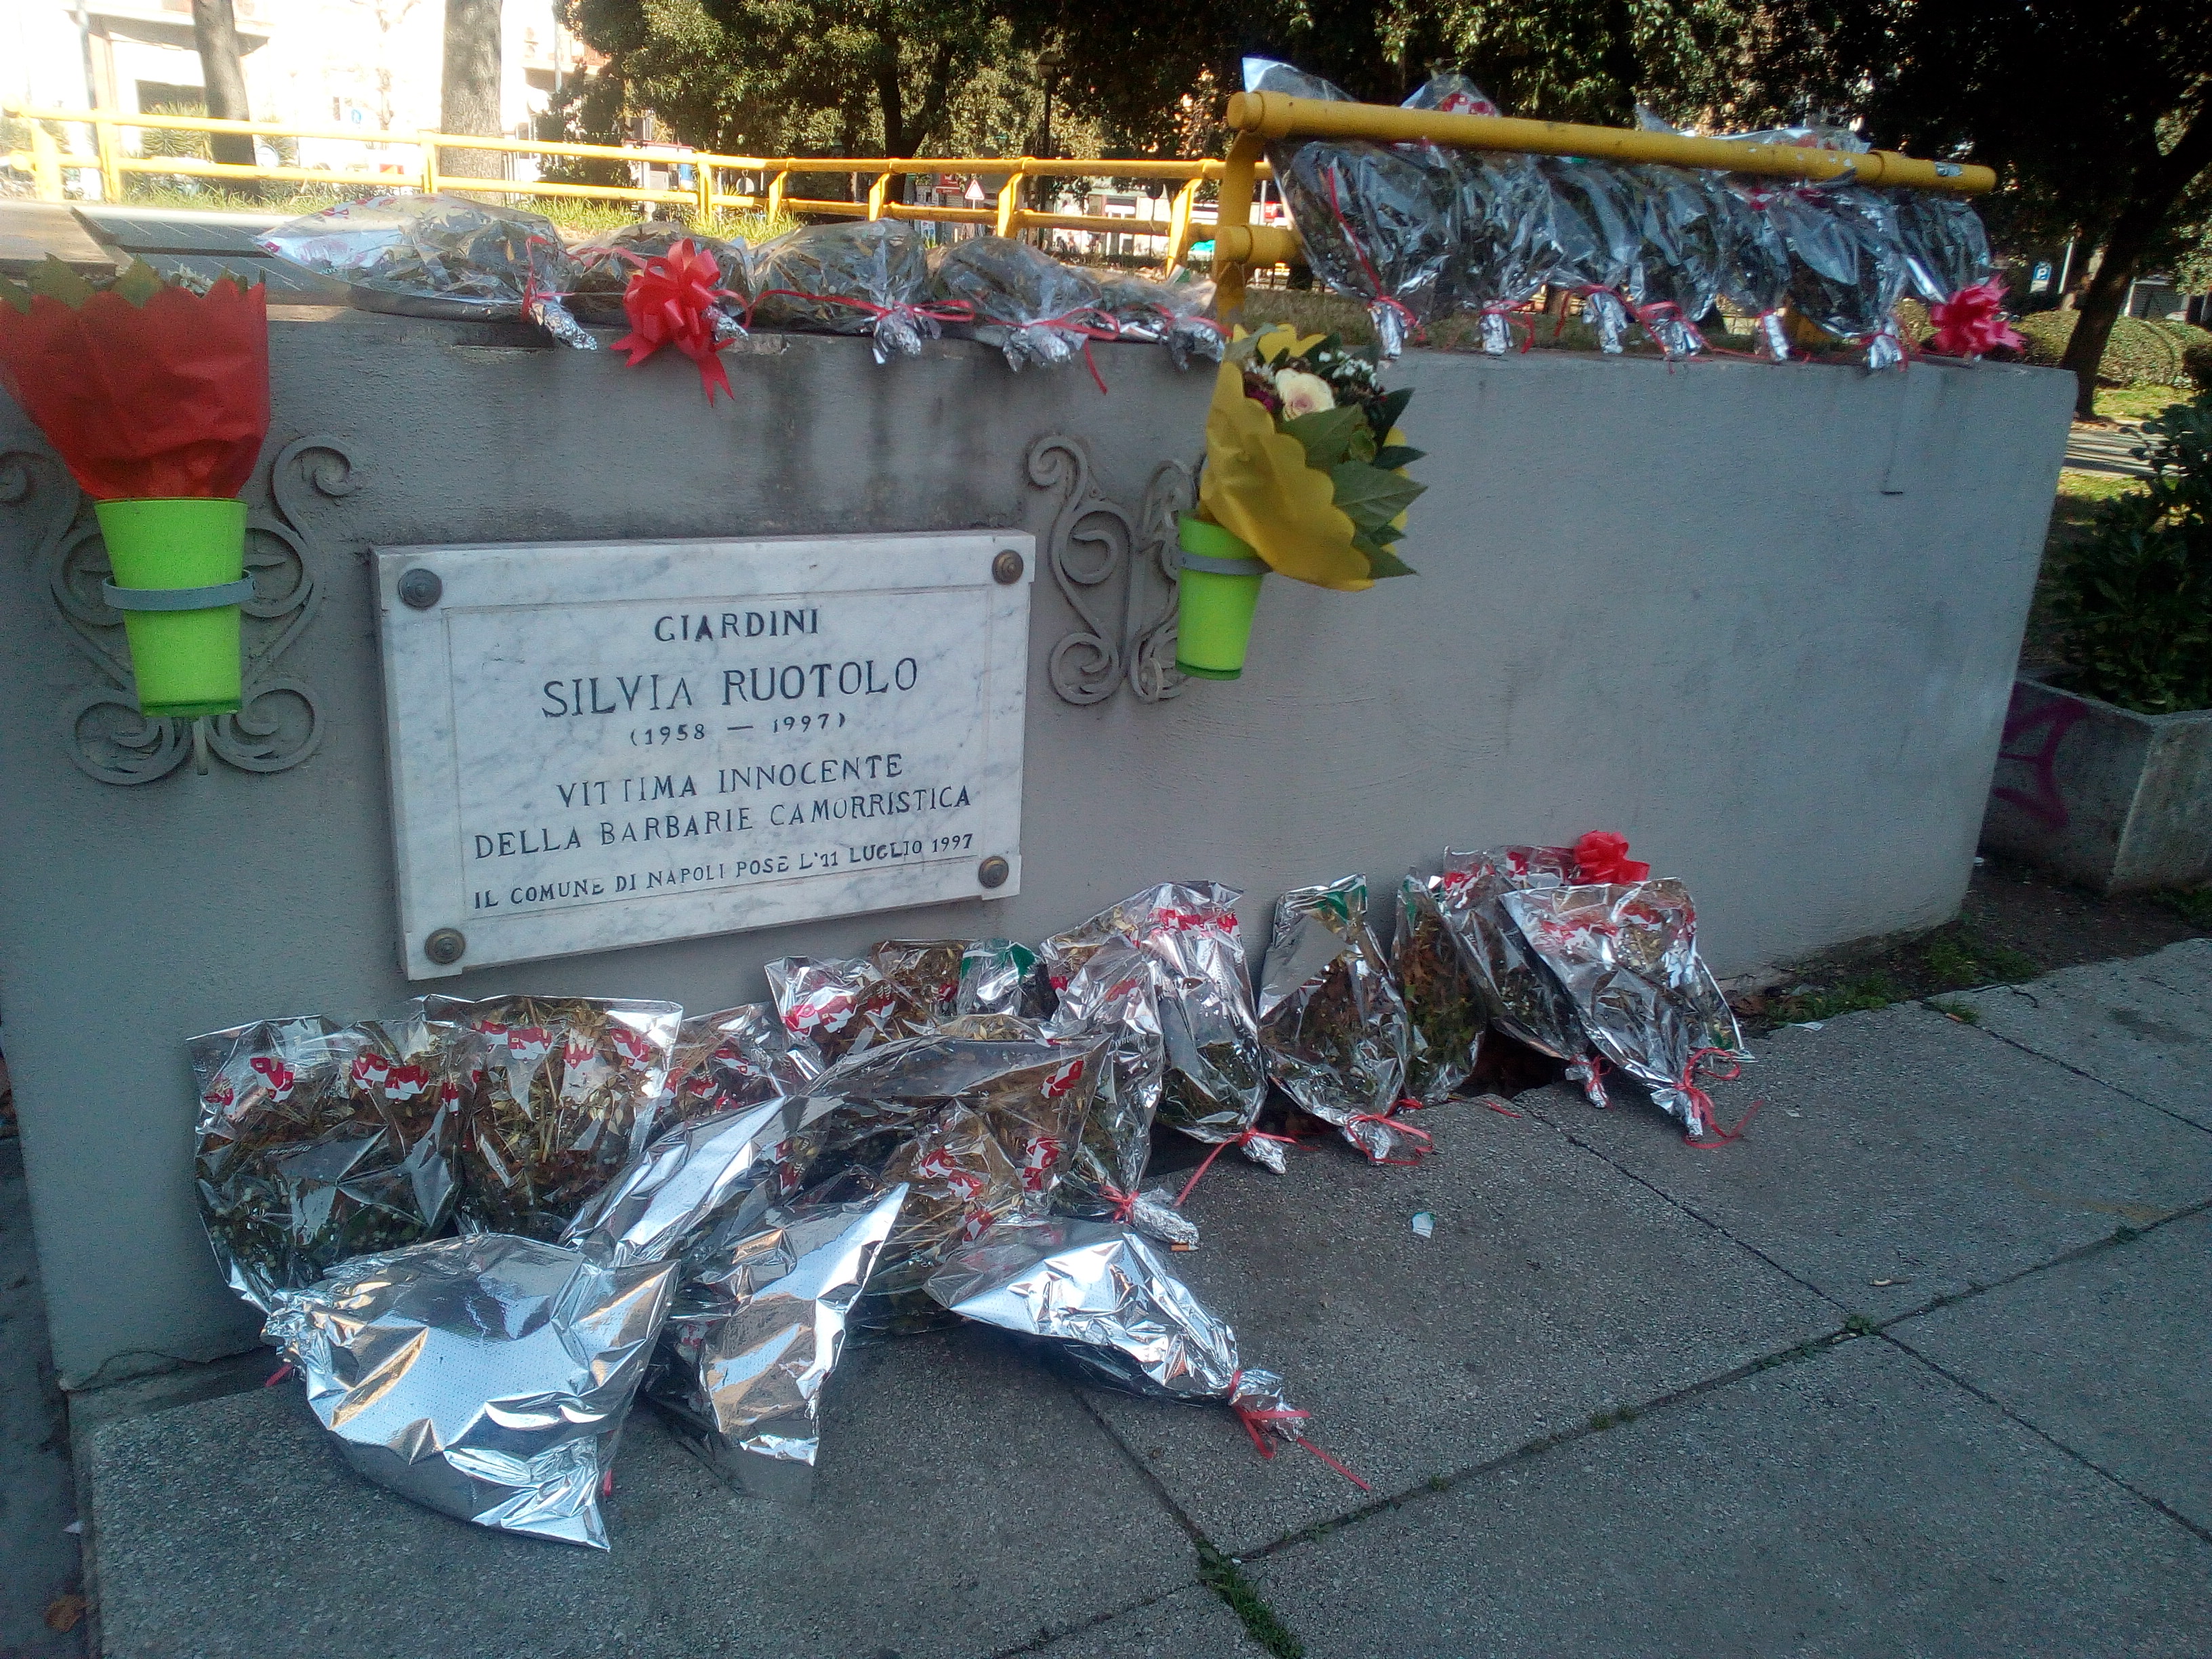 Piazza Medaglie d'Oro, la targa dedicata a Silvia Ruotolo, vittima innocente della barbarie della camorra